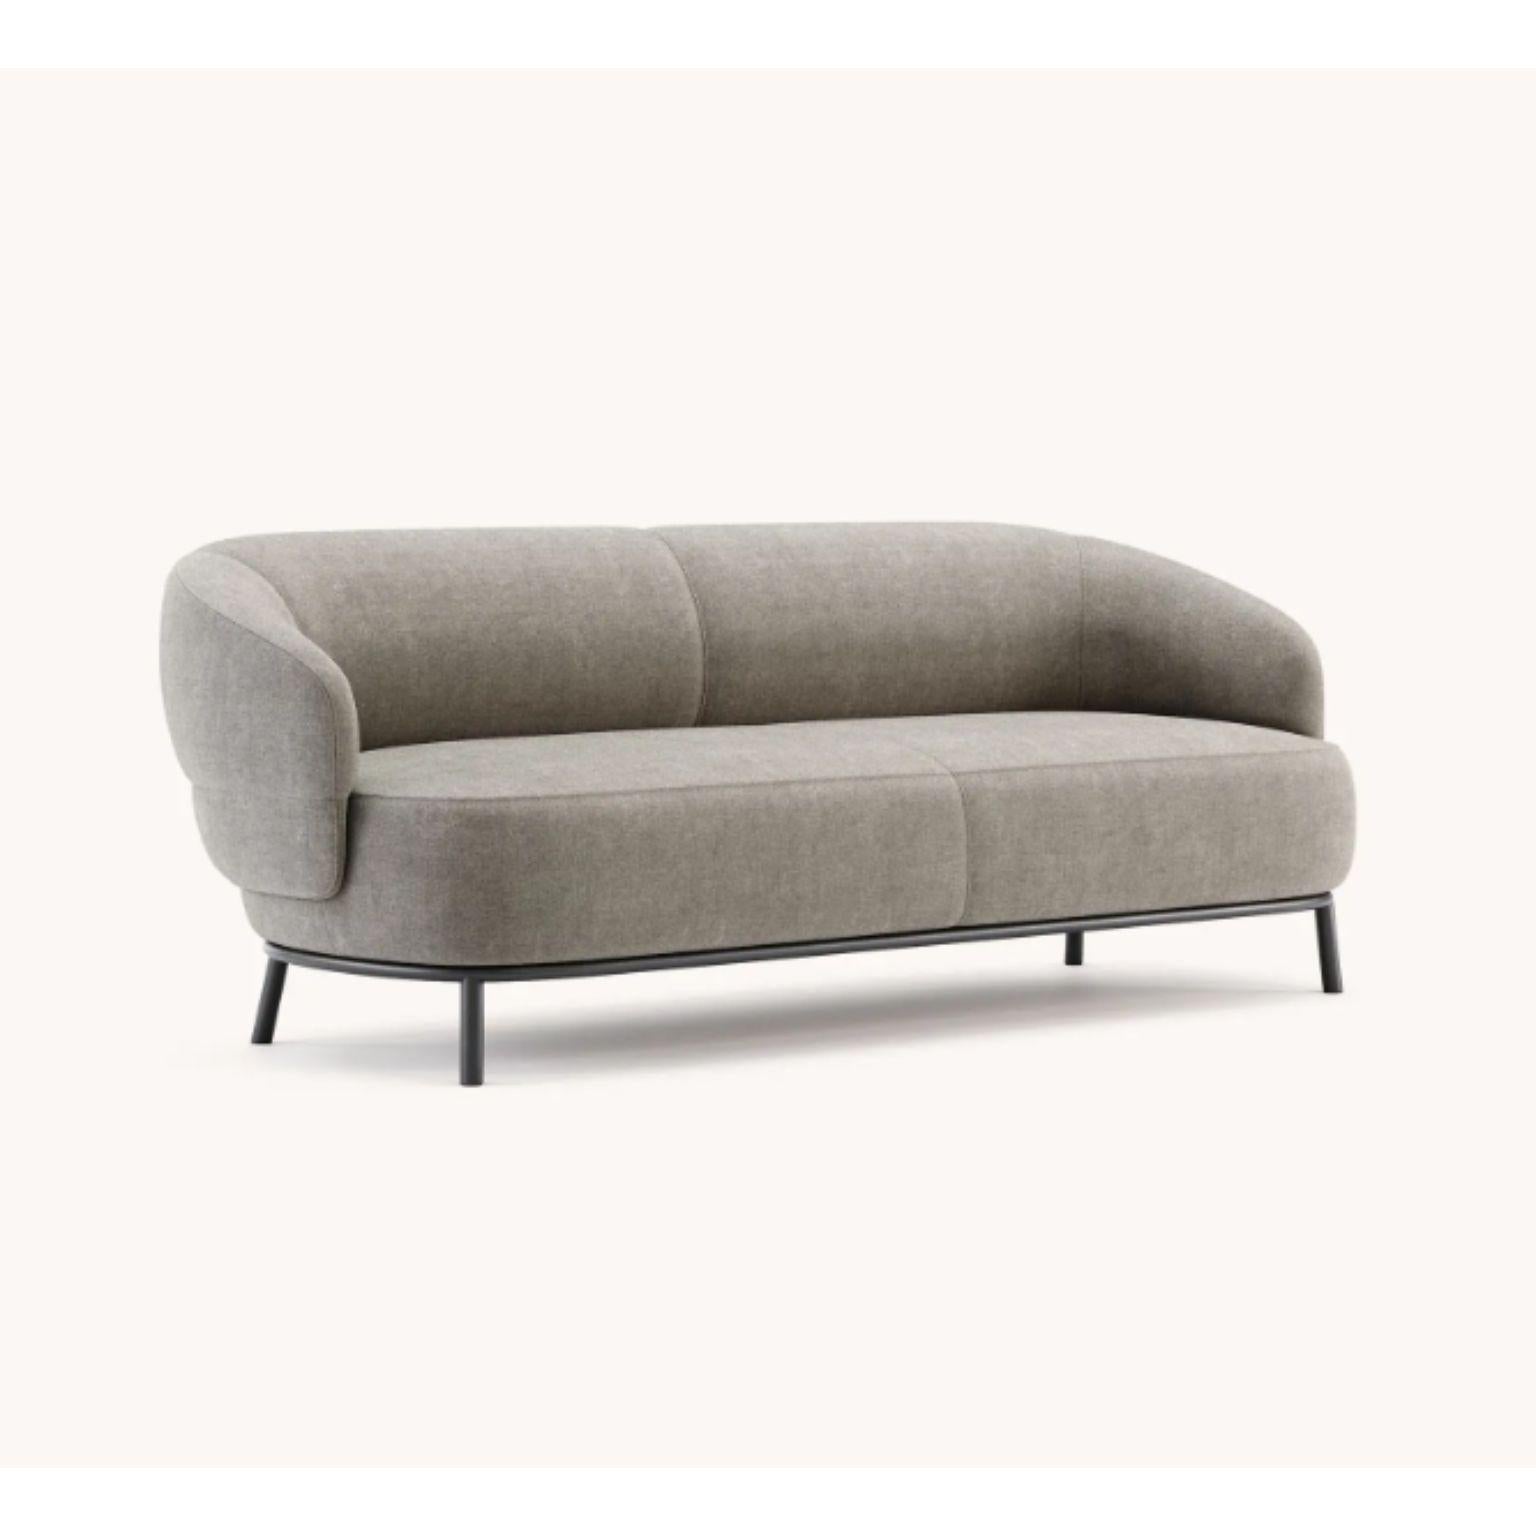 Juliet 2 sitz sofa by Domkapa
MATERIALIEN: schwarzer texturierter Stahl, Stoff (Logone 01). 
Abmessungen: B 202 x T 86 x H 73 cm.
Auch in verschiedenen MATERIALEN erhältlich. 

Inspiriert von einem Konzept der Eleganz, des Komforts und der